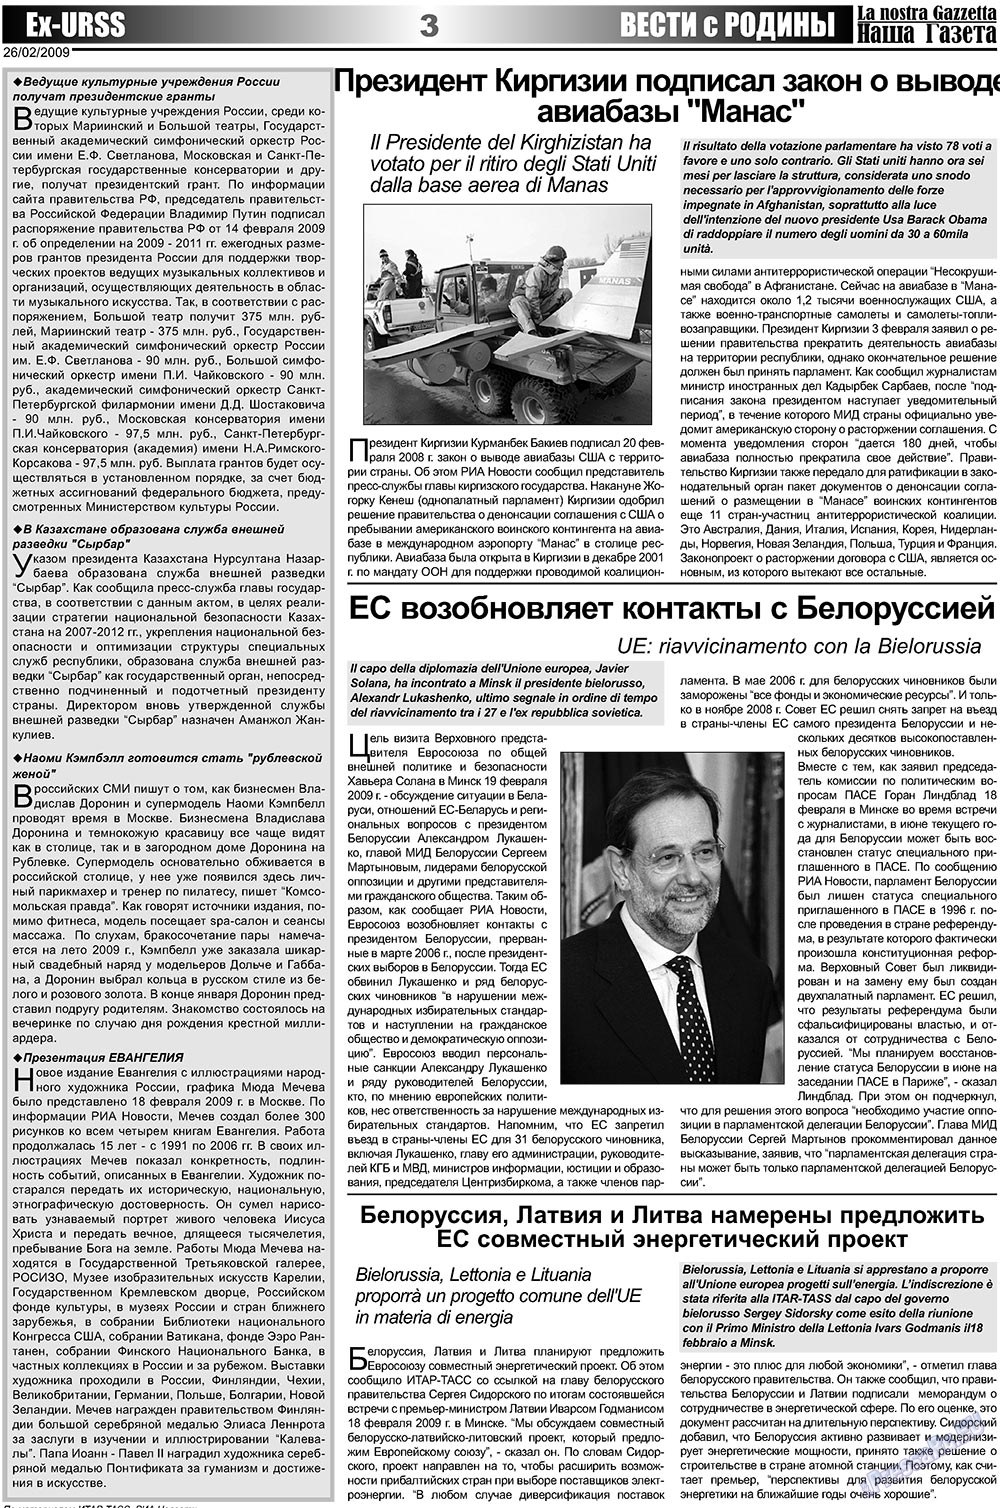 Наша Газета Италия, газета. 2009 №4 стр.3